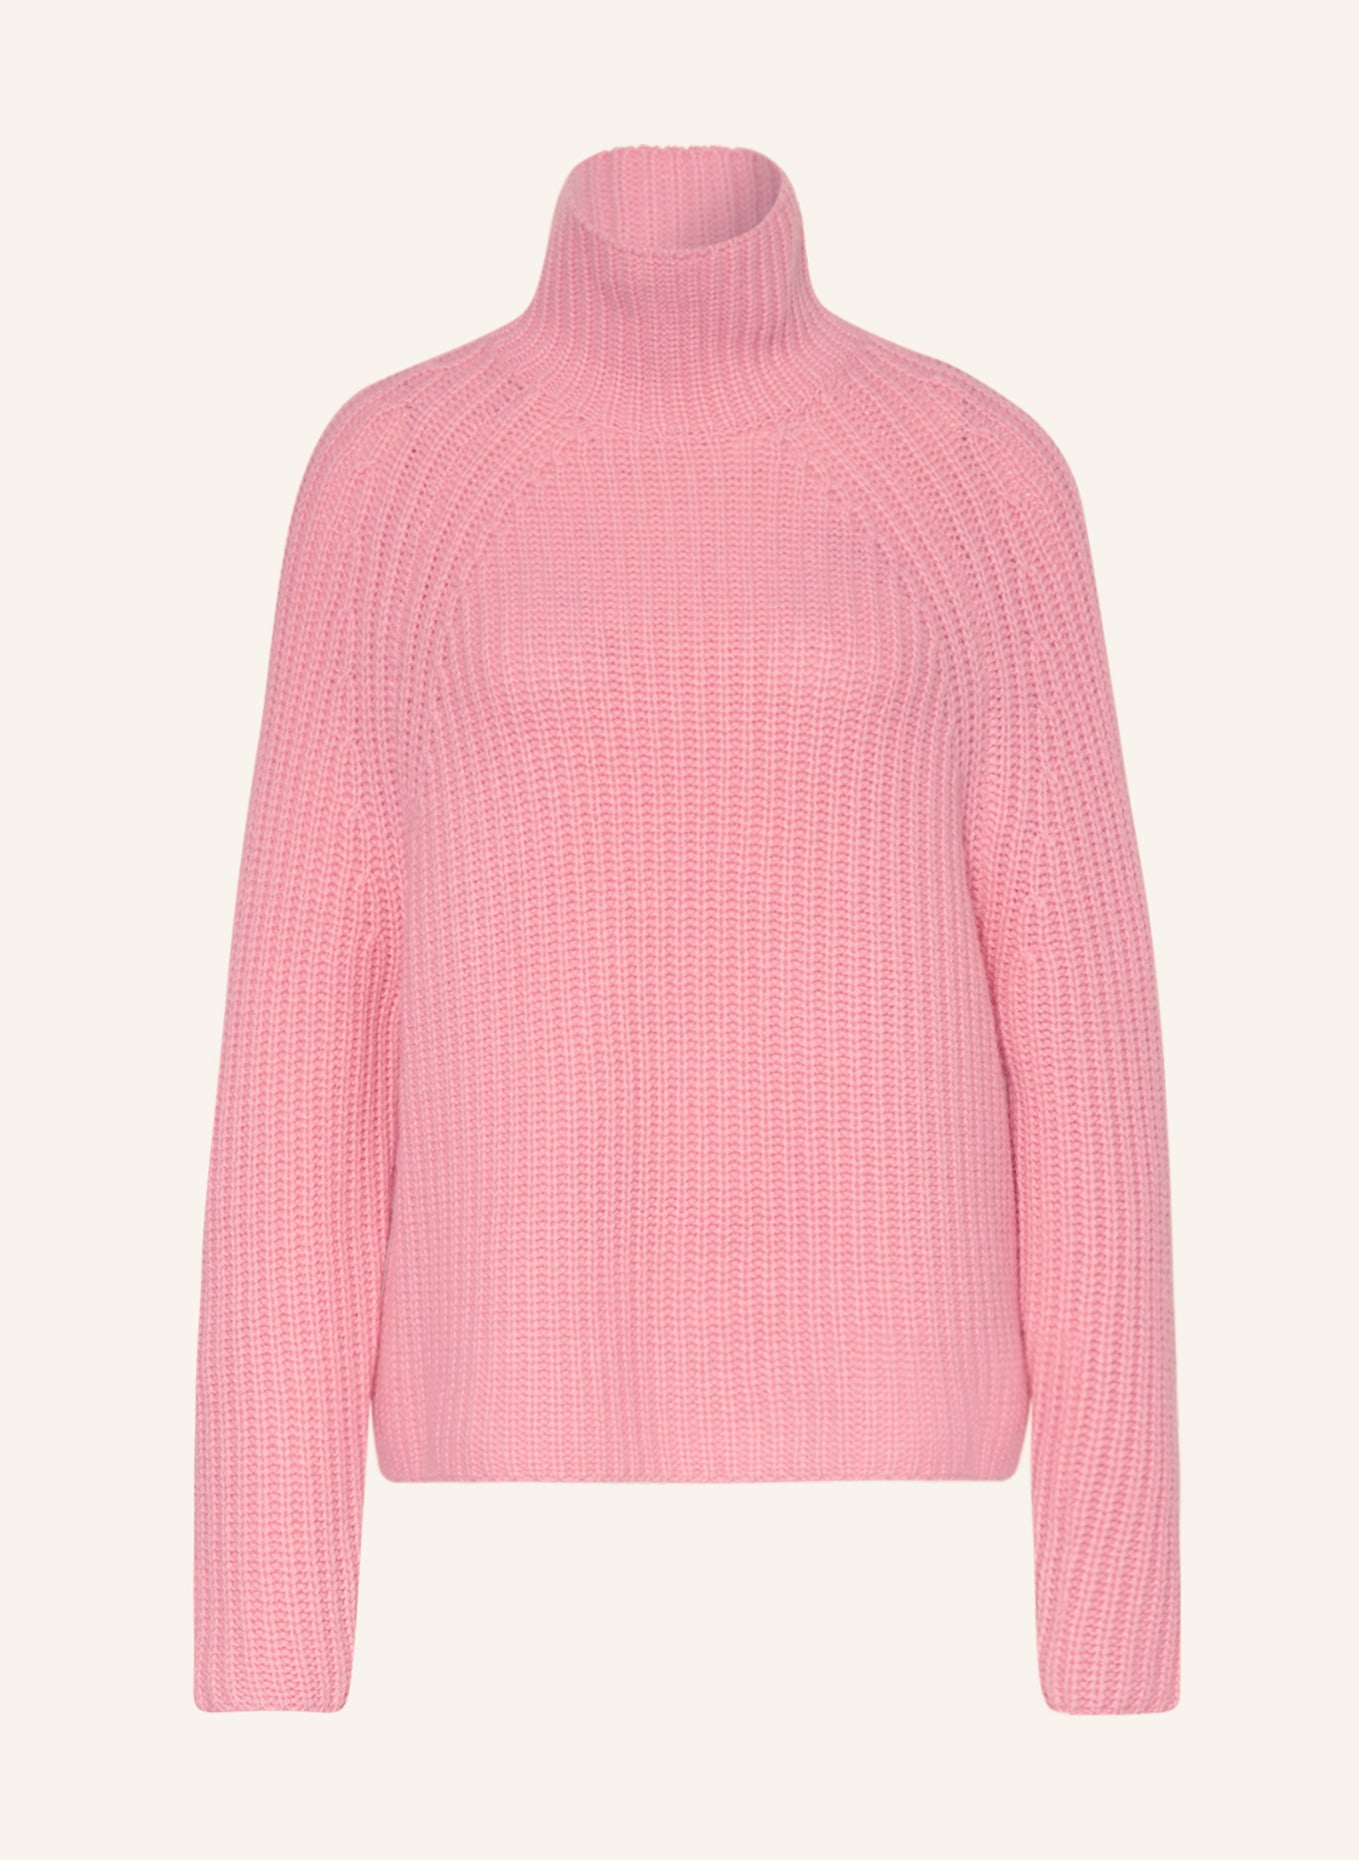 SEM PER LEI Pullover mit Cashmere, Farbe: ROSA (Bild 1)